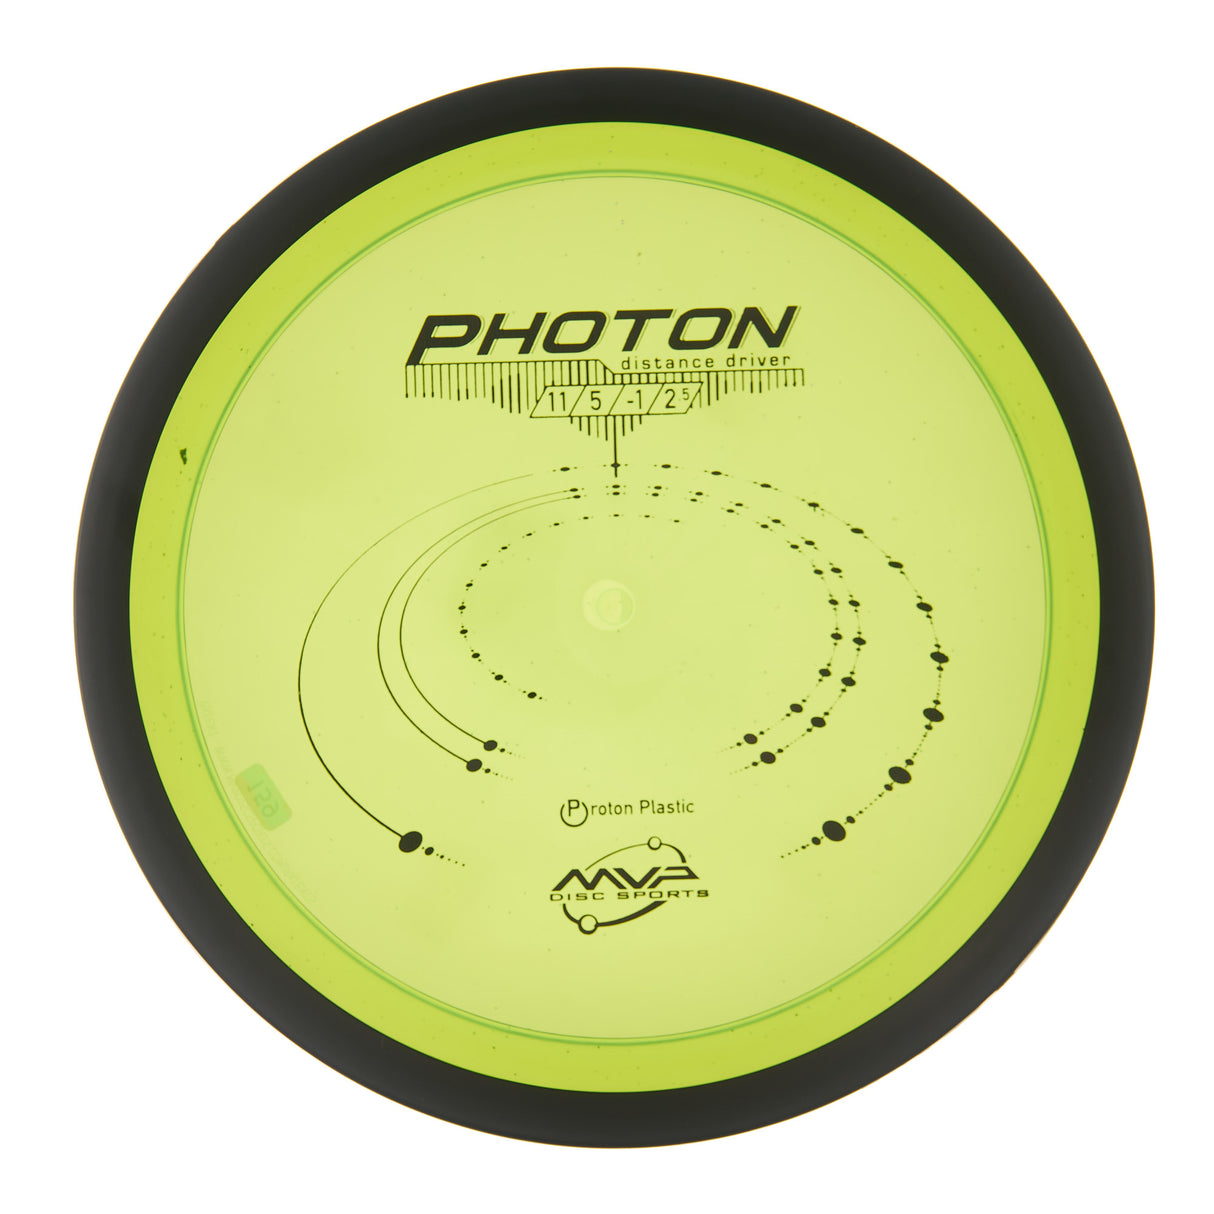 MVP Photon - Proton 160g | Style 0006